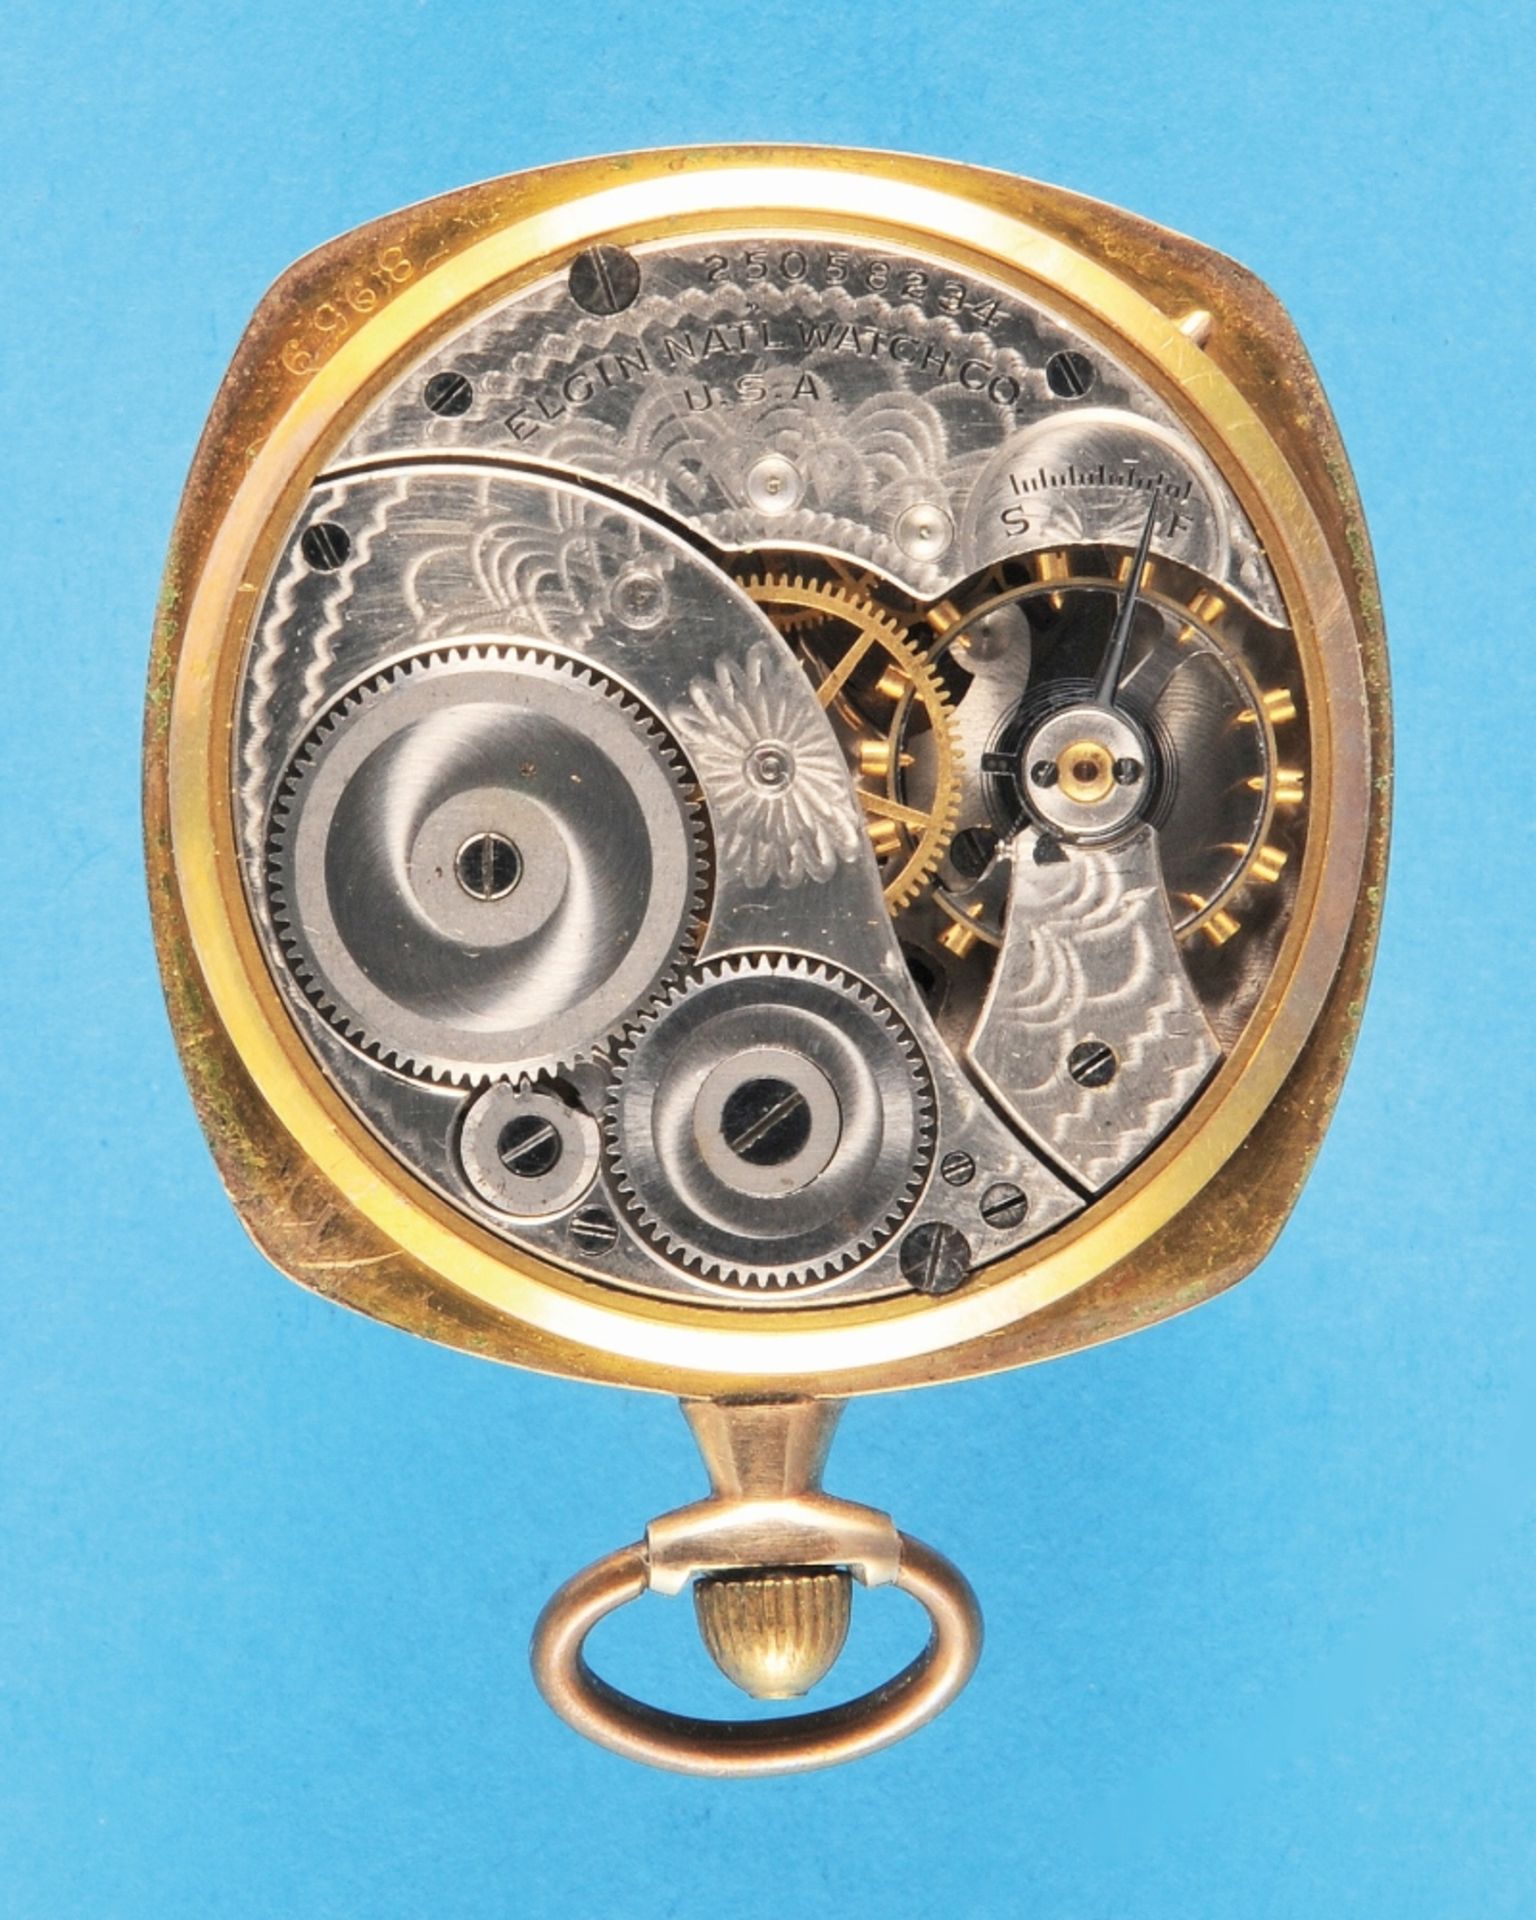 Elgin, square, engraved, gilt pocket watch, deeply engraved bezel